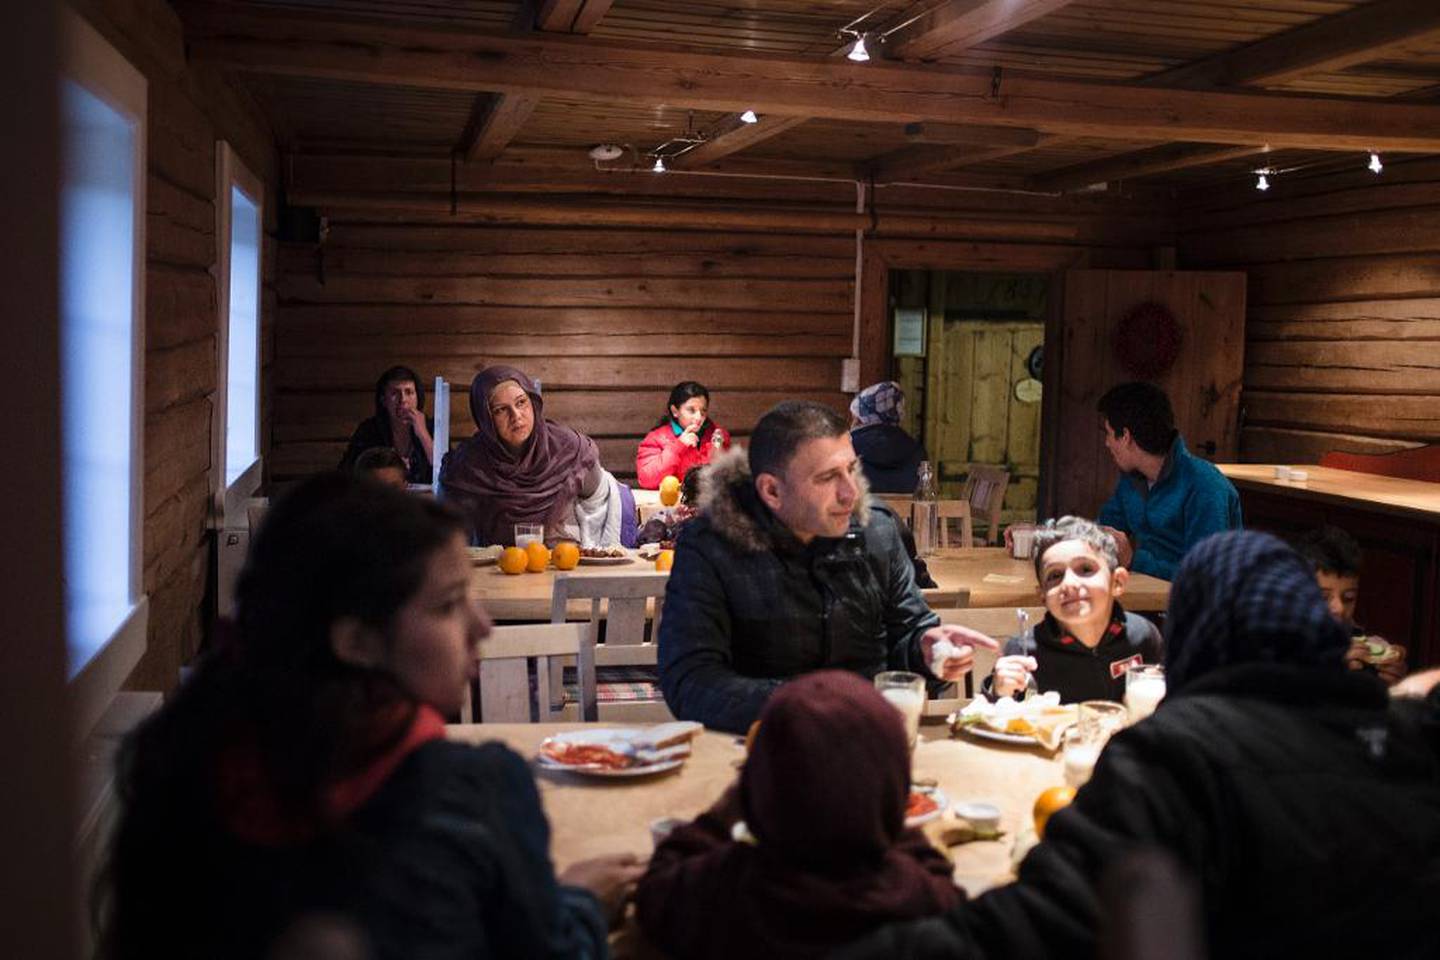 Det er uvant for flyktningene å spise den norske maten.  Selv om norsk laks regnes for luksusvare i Norge, er det ikke favoritten til syrerne. – Gi oss kylling og ris, så er vi fornøyde. Vi trenger ikke dyr mat, kylling er billig, hvorfor kan vi ikke få det? undrer «Hassan».